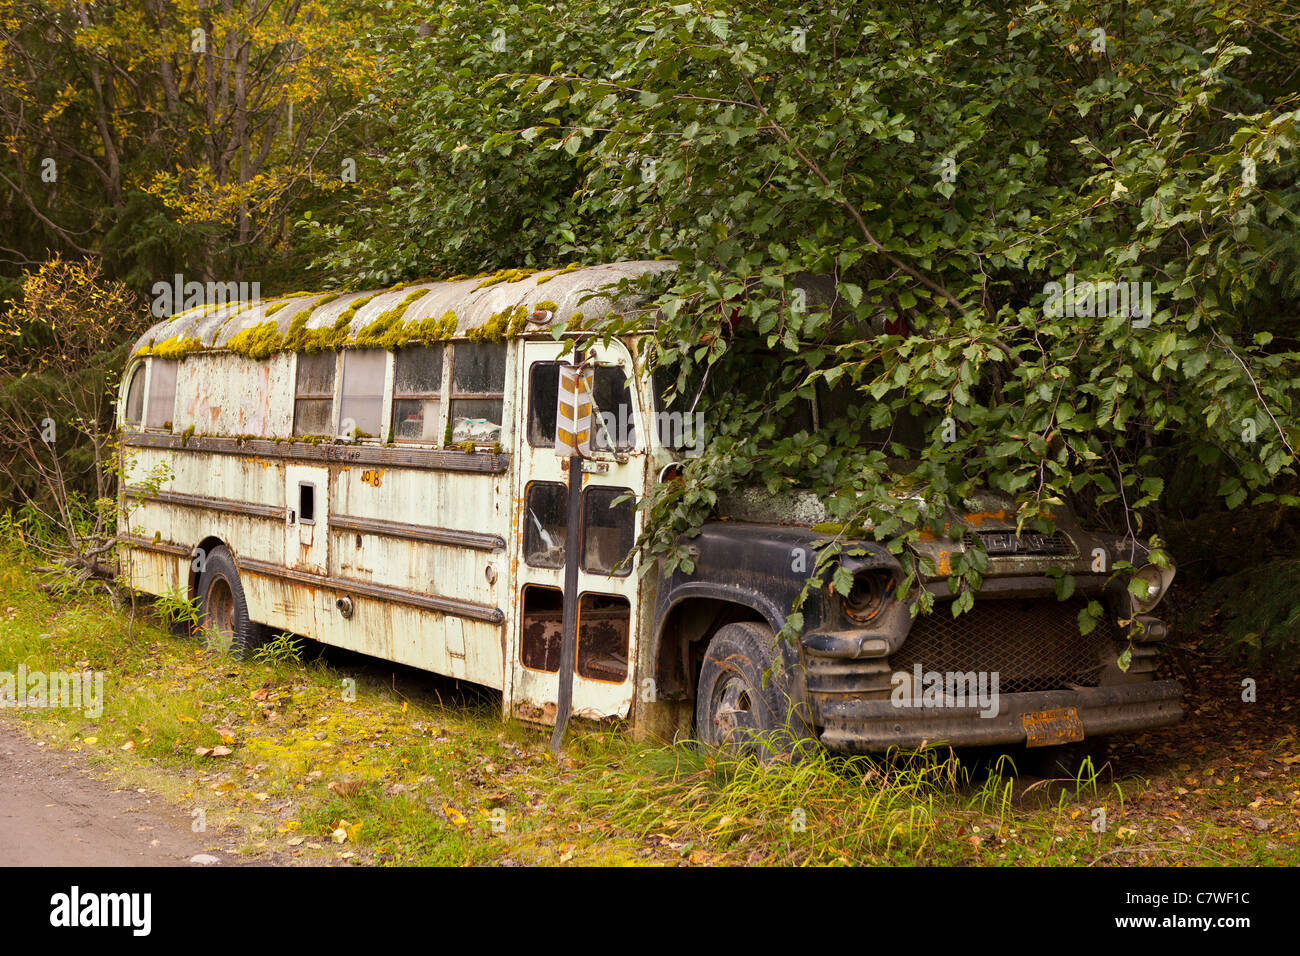 ALASKA, USA - abandoned bus Stock Photo